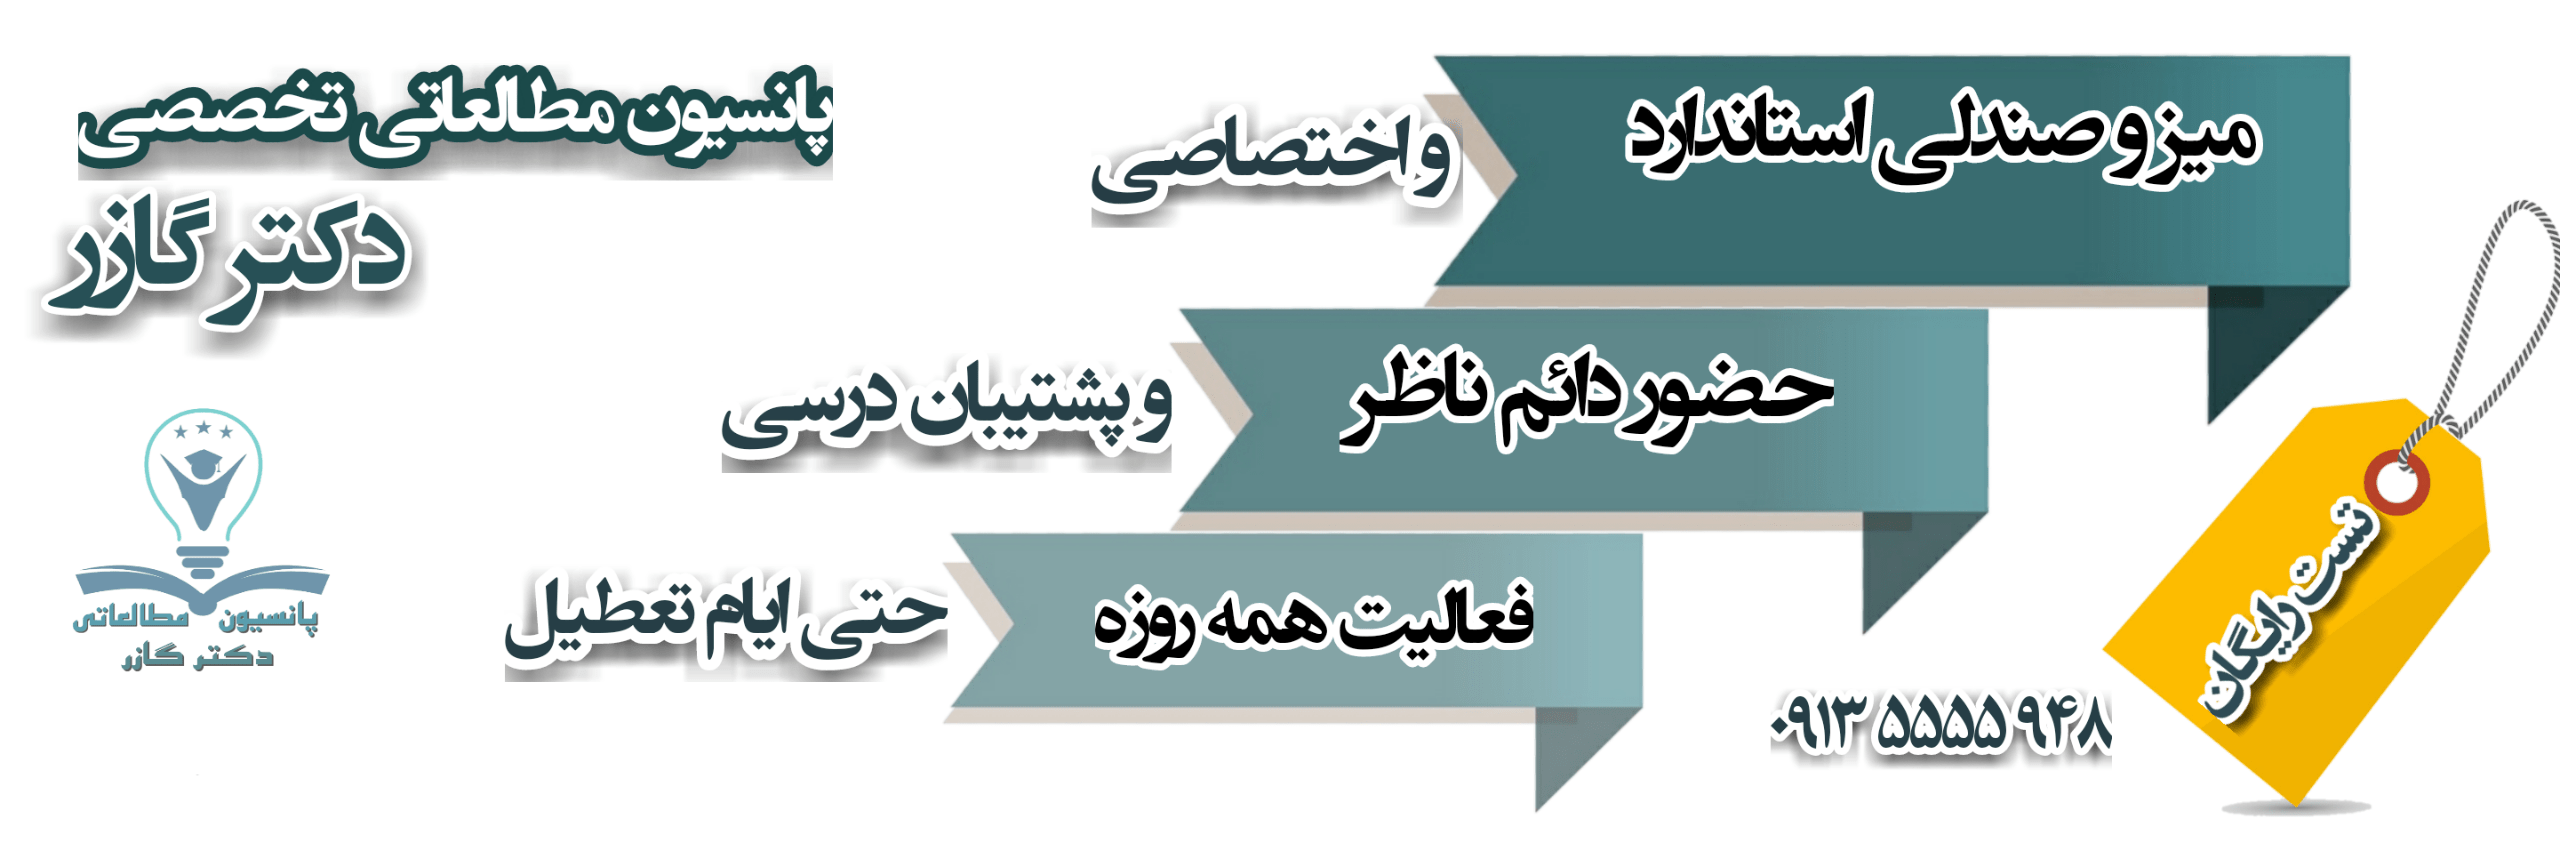 پانسیون مطالعاتی کنکور دکترگازر در اصفهان